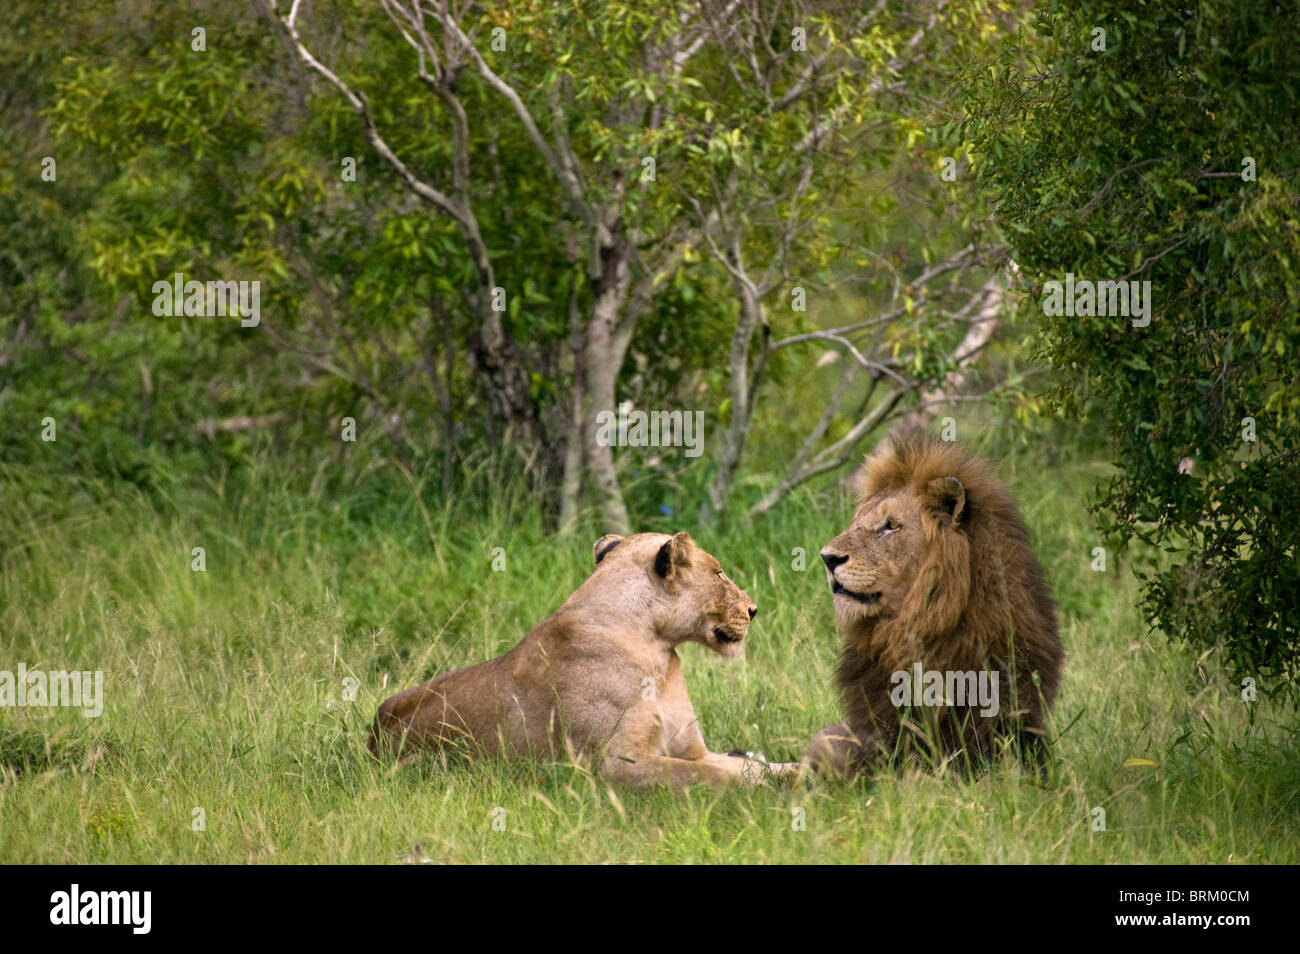 Un par de apareamiento de leones descansando en una densa sabana arbolada Foto de stock